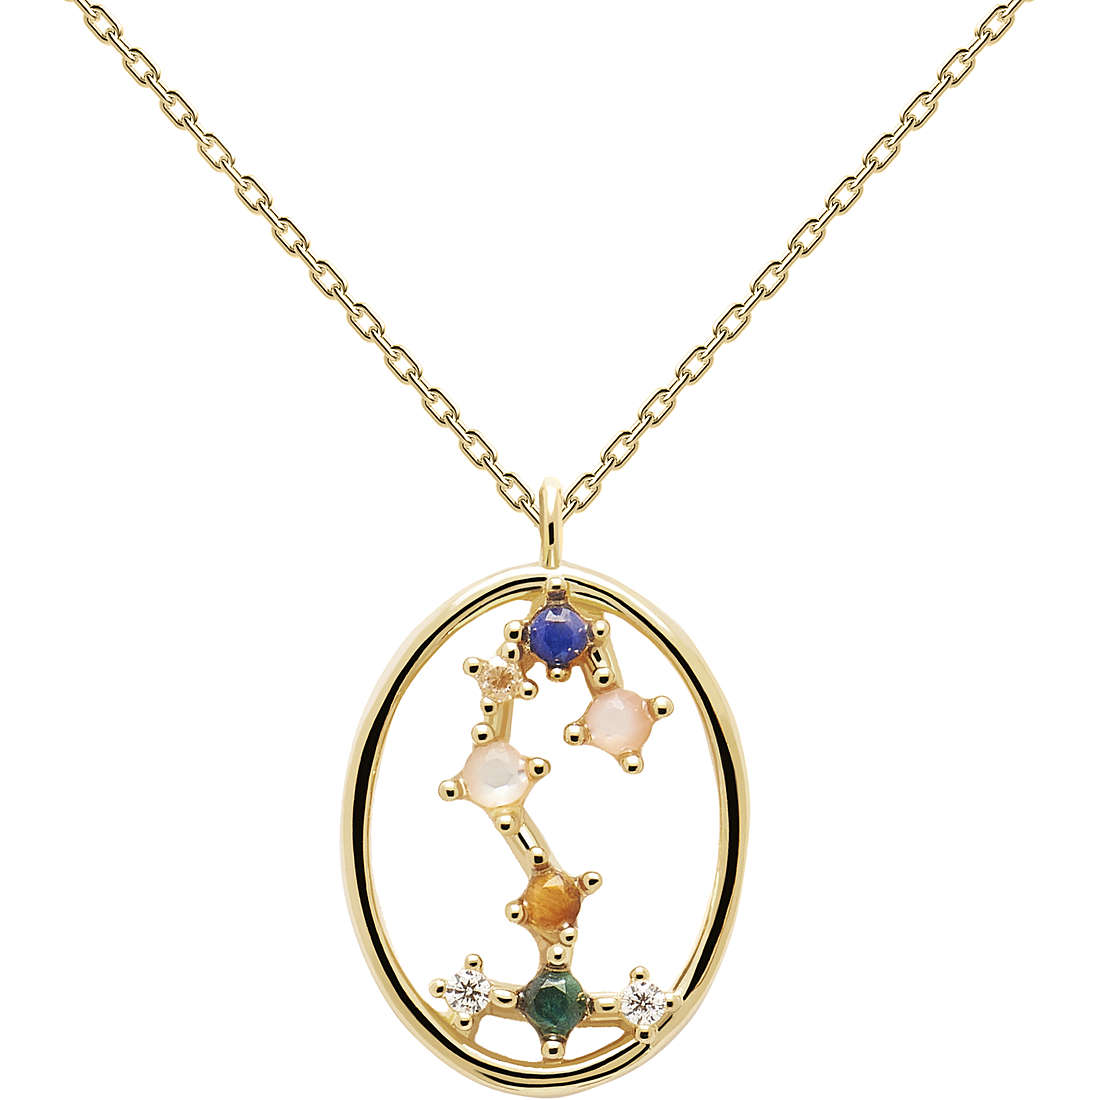 necklace woman zodiac sign Scorpio PDPaola jewel Zodiac CO01-351-U